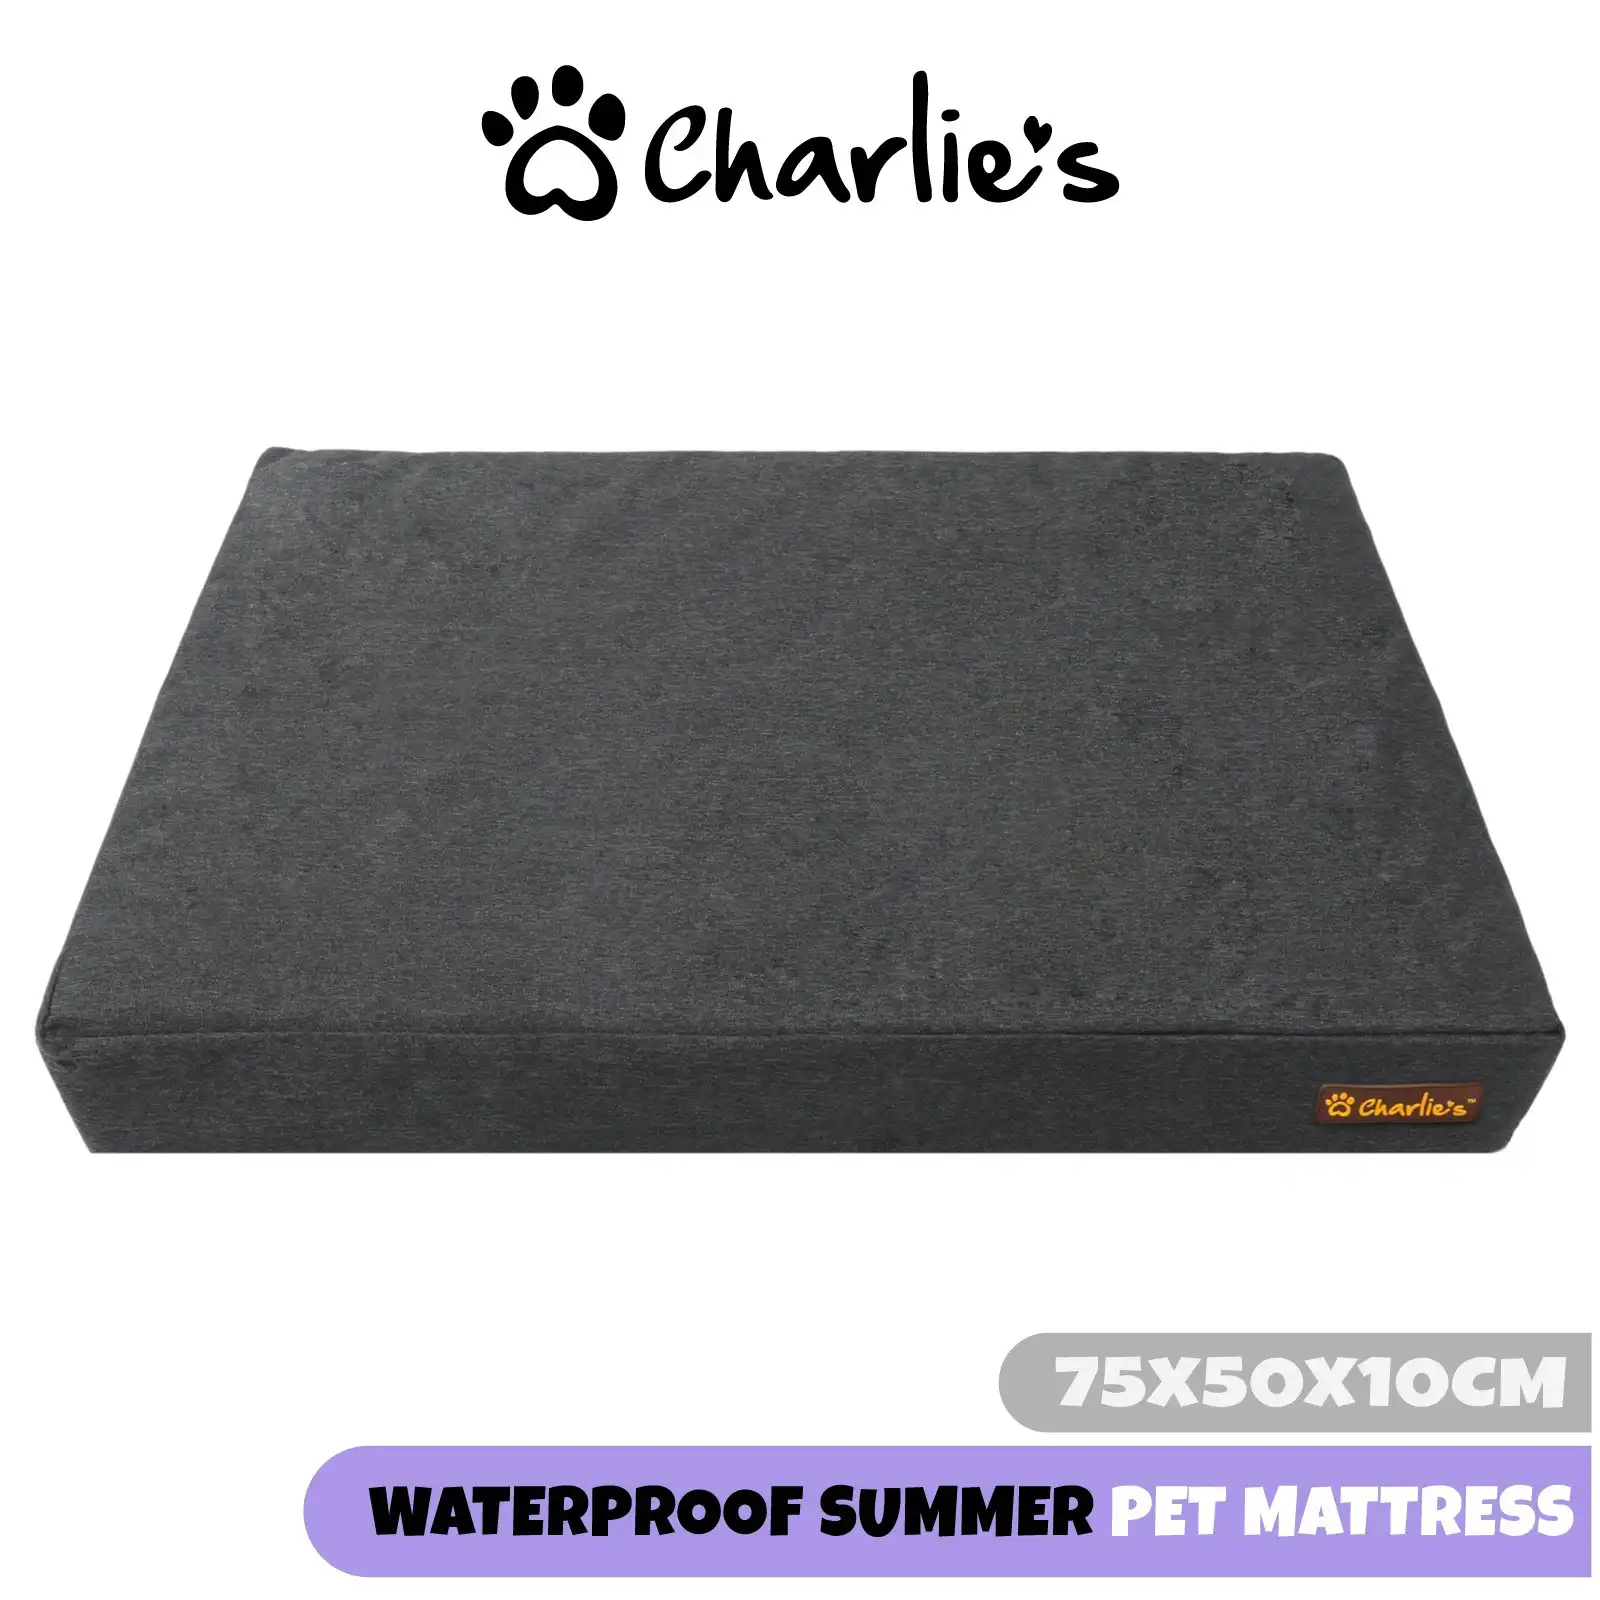 Charlie's Summer Waterproof Pet Mattress Small